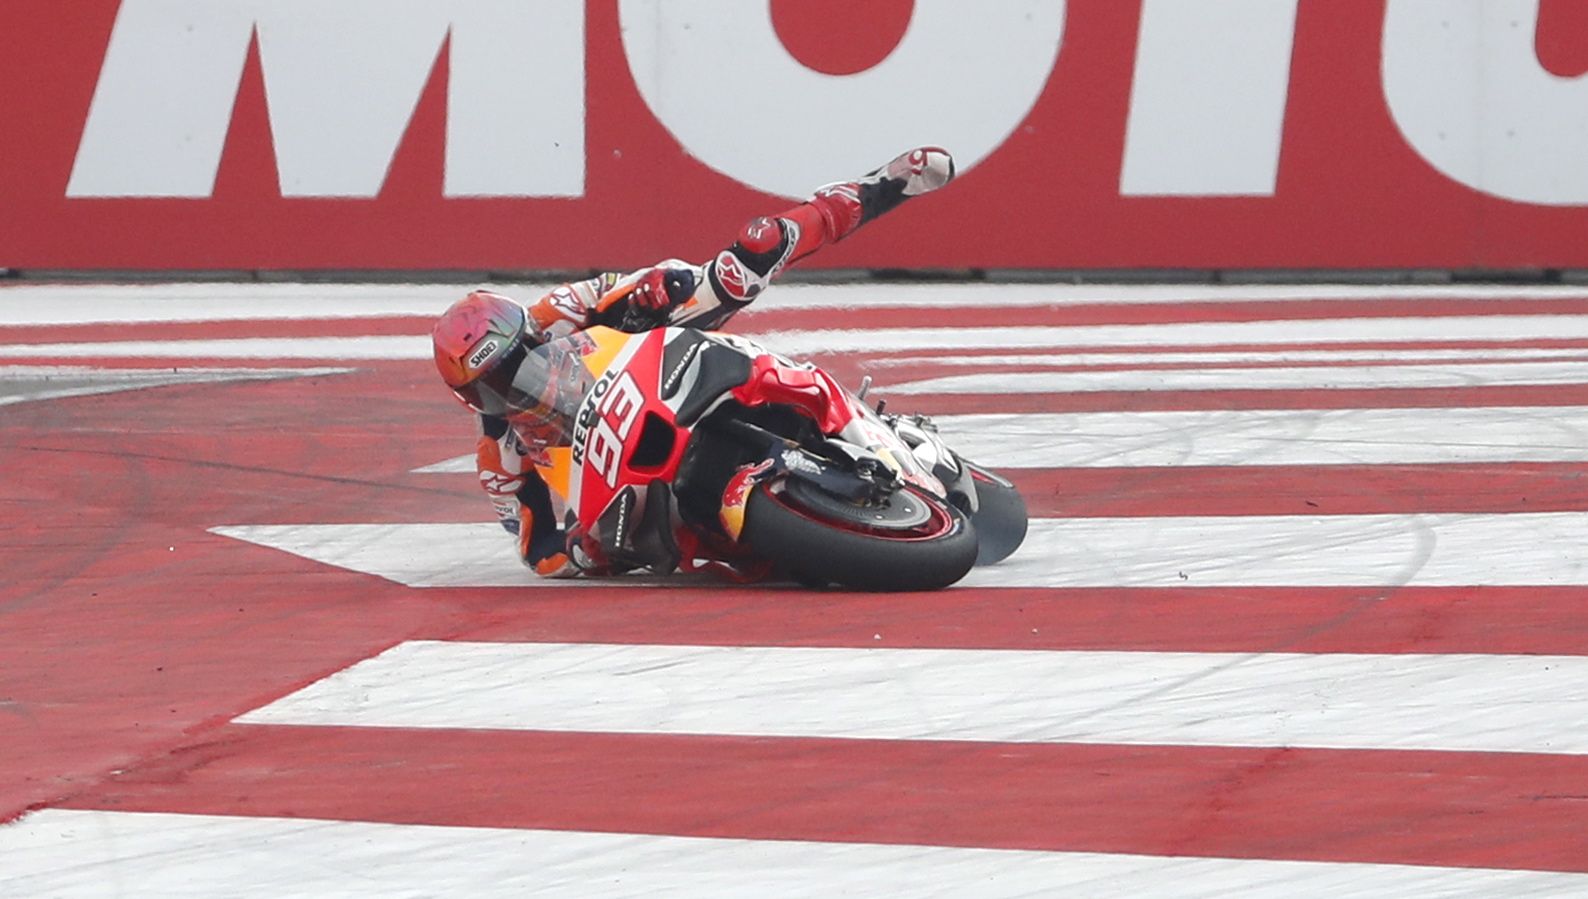 El GP de la India de MotoGP, en imágenes